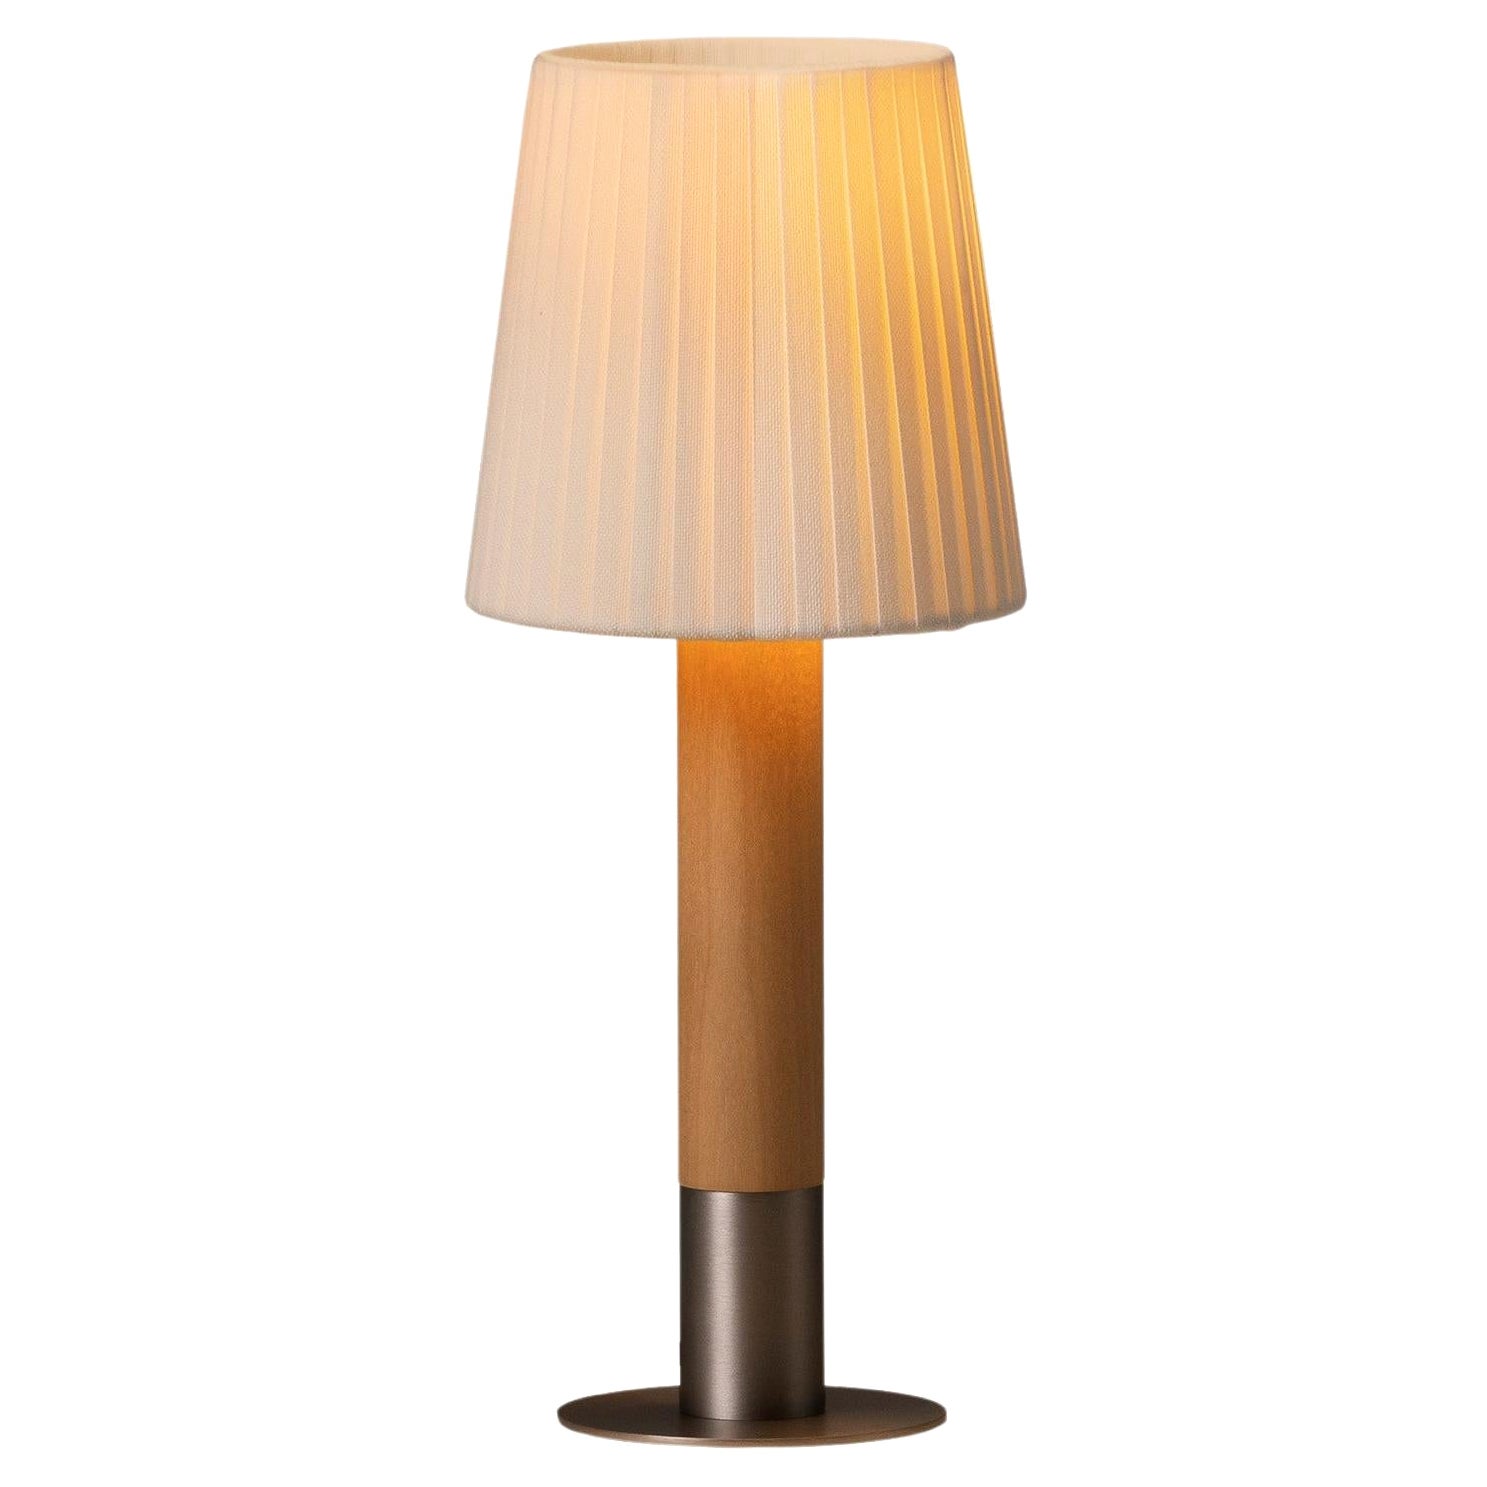 Nickel Básica Mínima Table Lamp by Santiago Roqueta, Santa & Cole For Sale